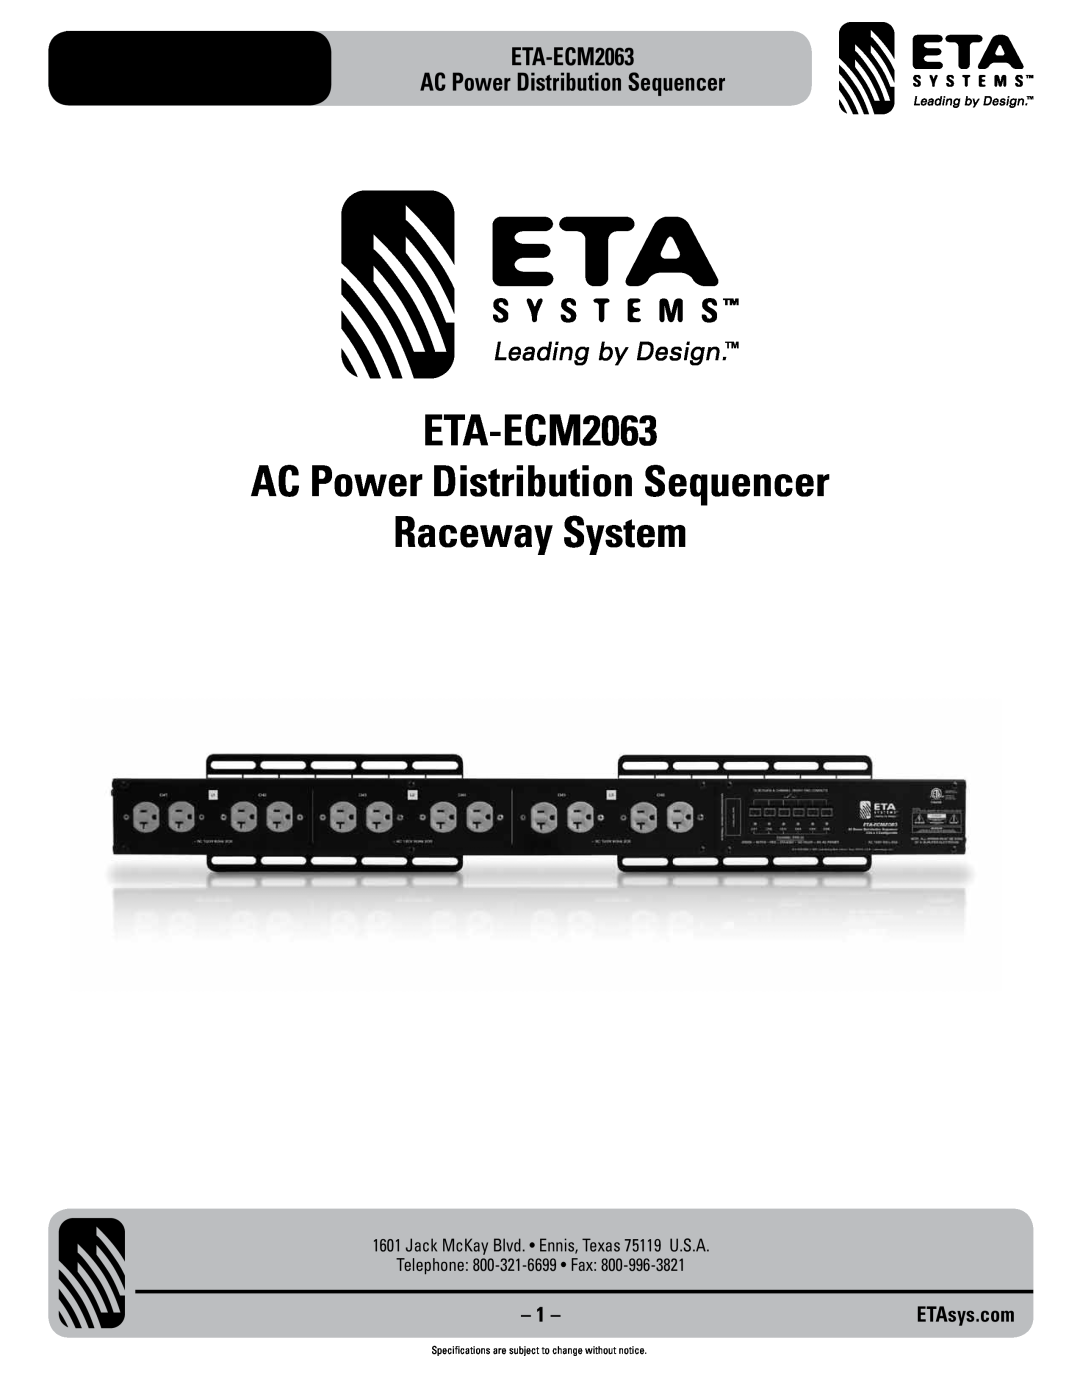 ETA Systems eta-ecm2063 specifications ETA-ECM2063 AC Power Distribution Sequencer, Telephone 800-321-6699 Fax, ETAsys.com 